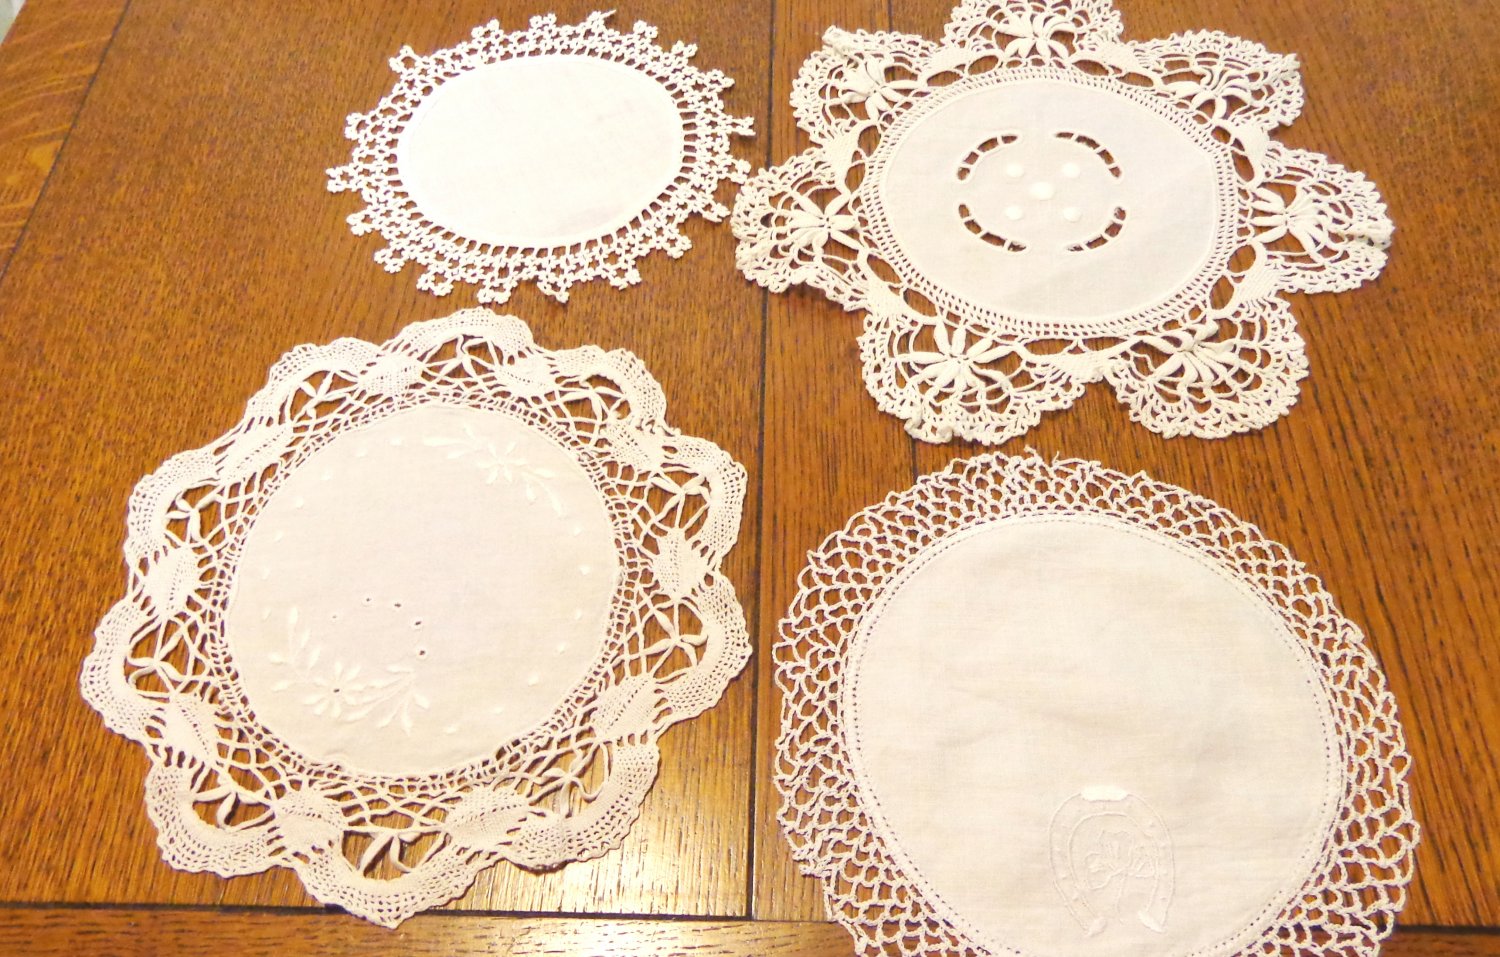 Lot of 4 antique linen cotton lace doilies various use under lamps or figurines antique  hc3403